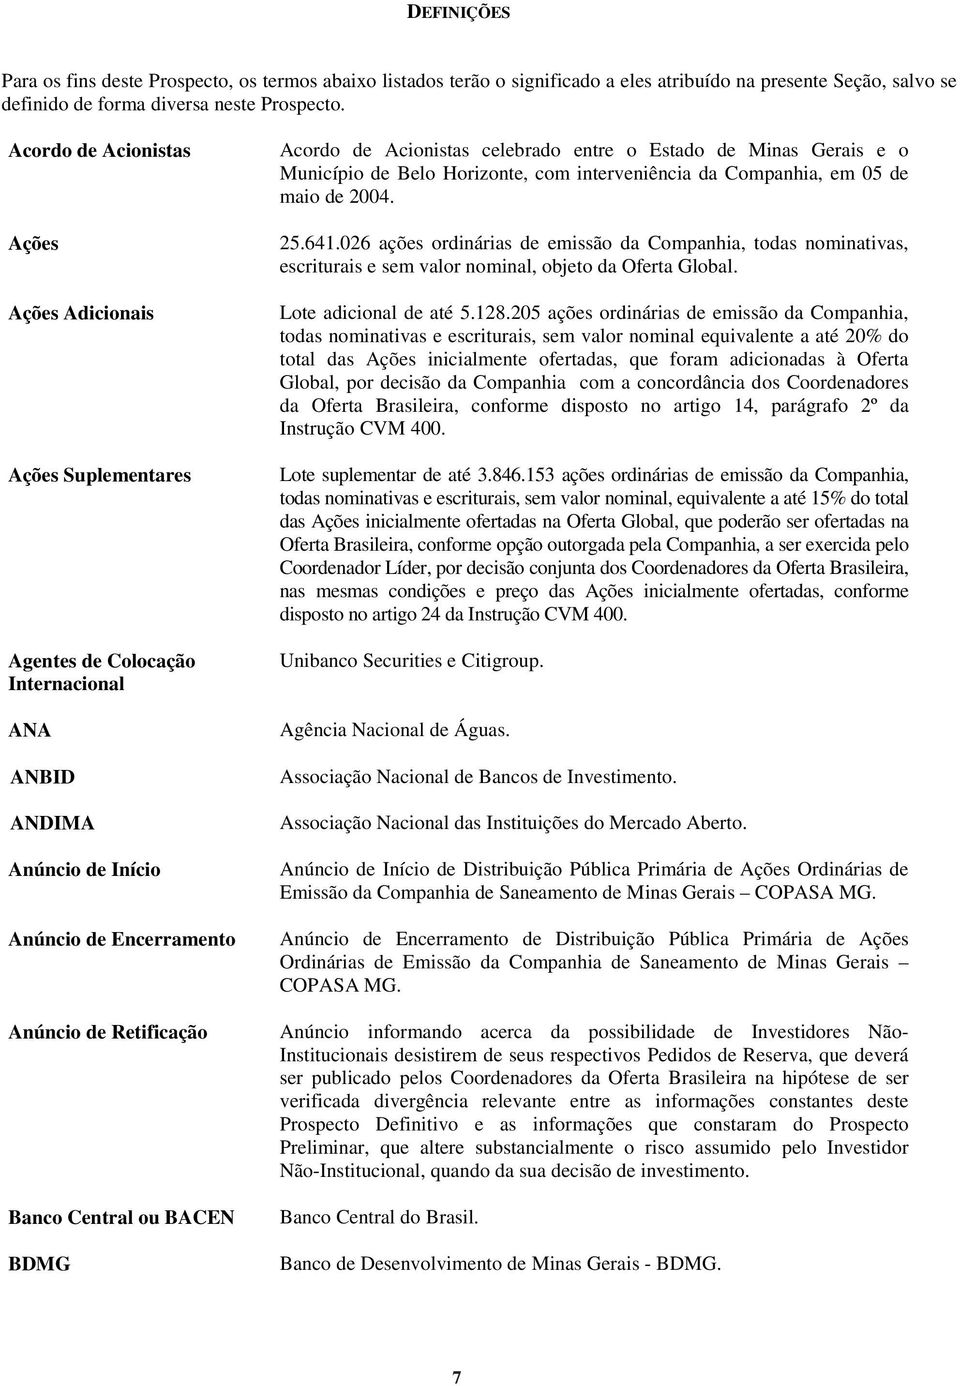 BACEN BDMG Acordo de Acionistas celebrado entre o Estado de Minas Gerais e o Município de Belo Horizonte, com interveniência da Companhia, em 05 de maio de 2004. 25.641.